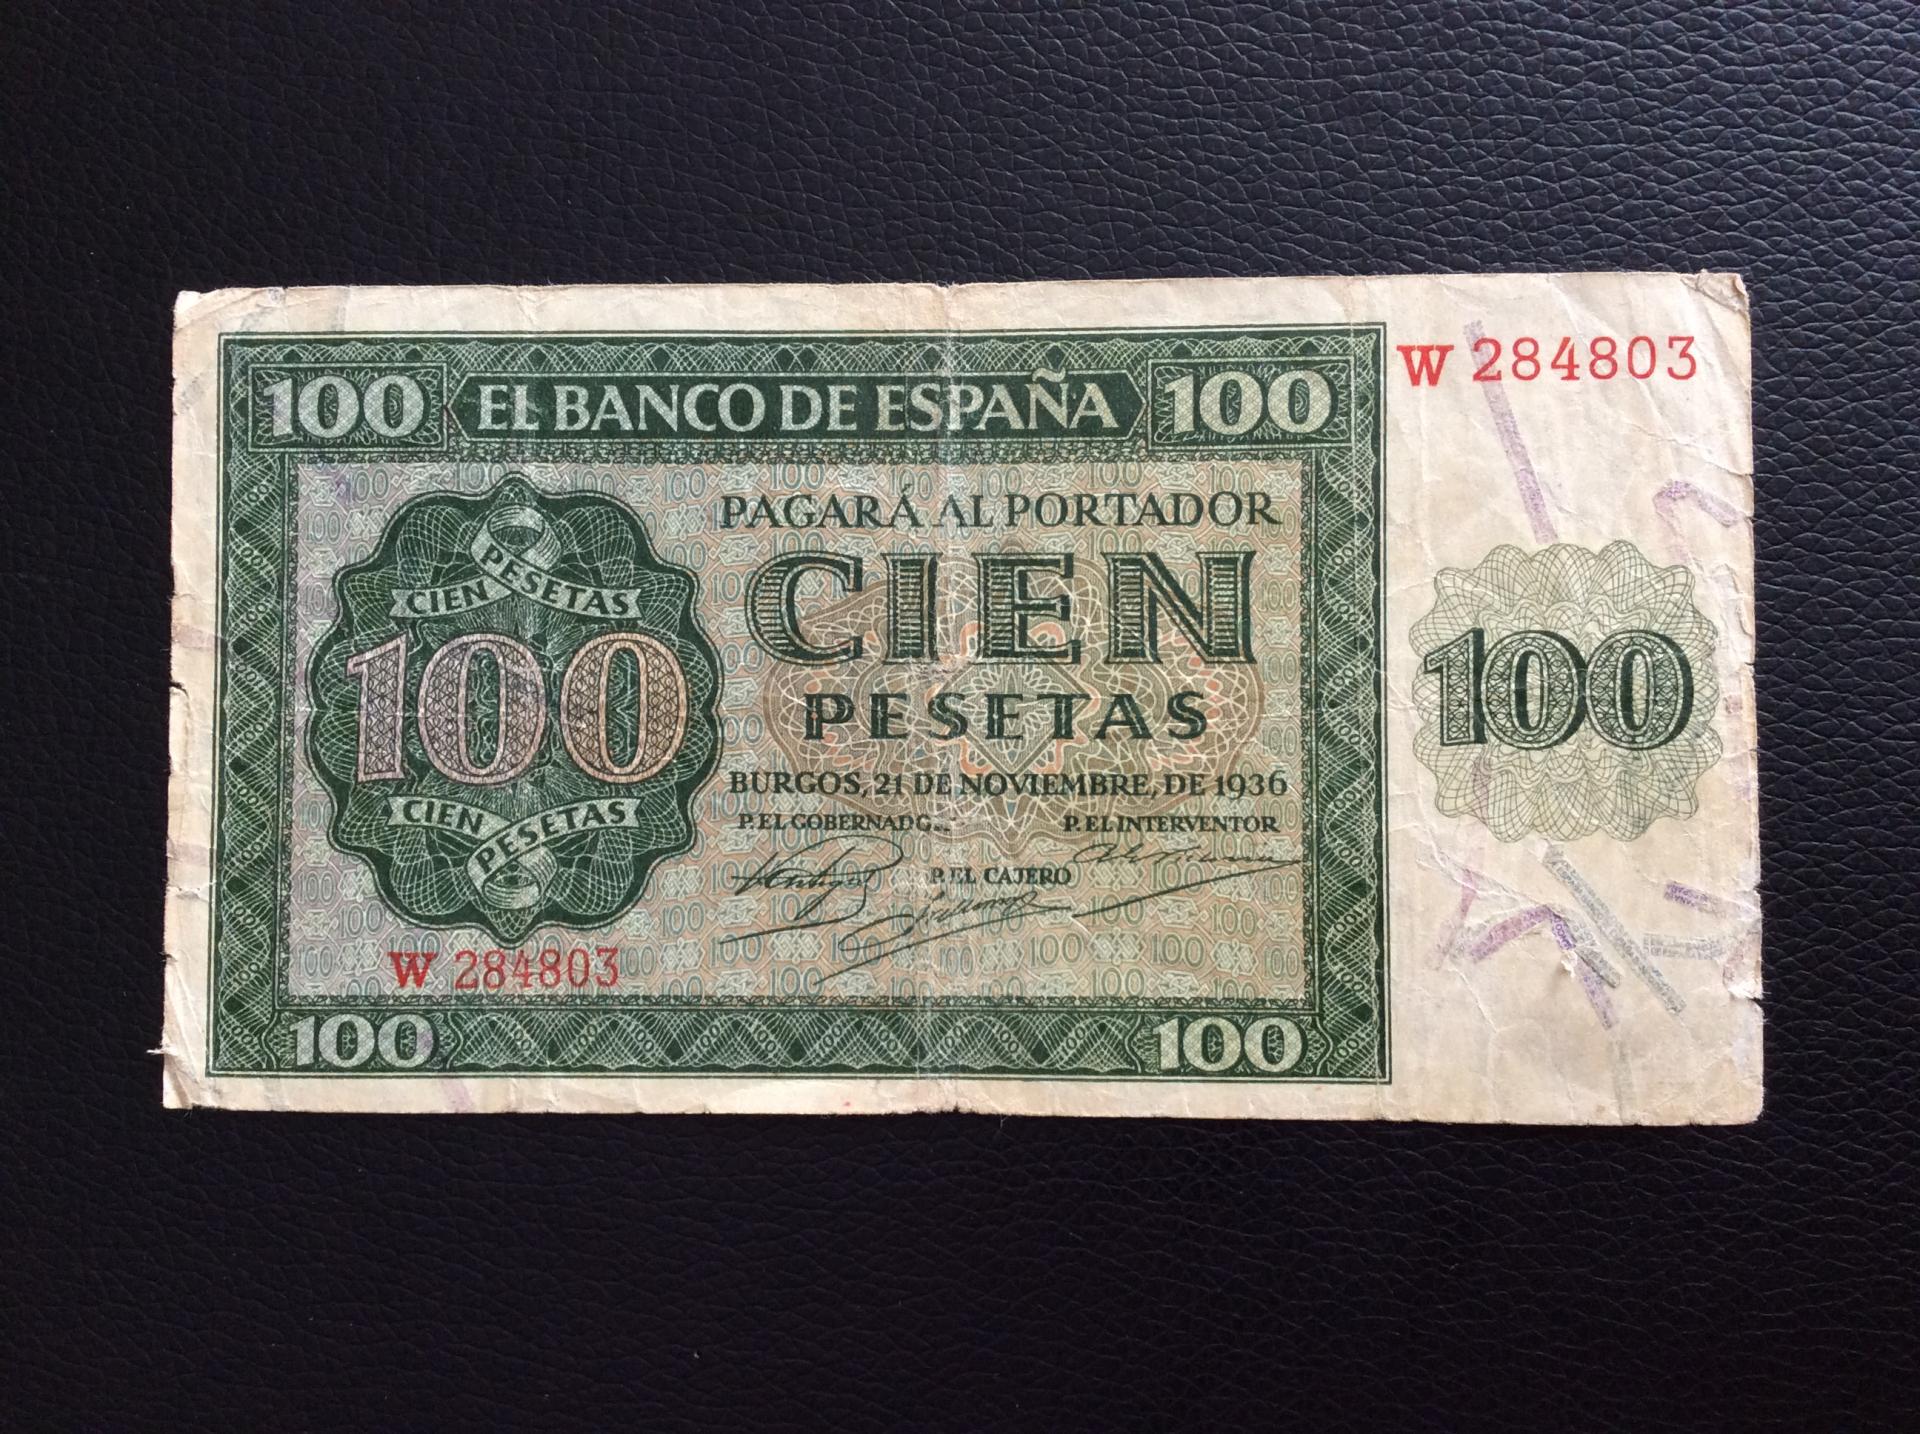 100 PESETAS 1936 - BURGOS - GUERRA CIVIL ESPAÑOLA 